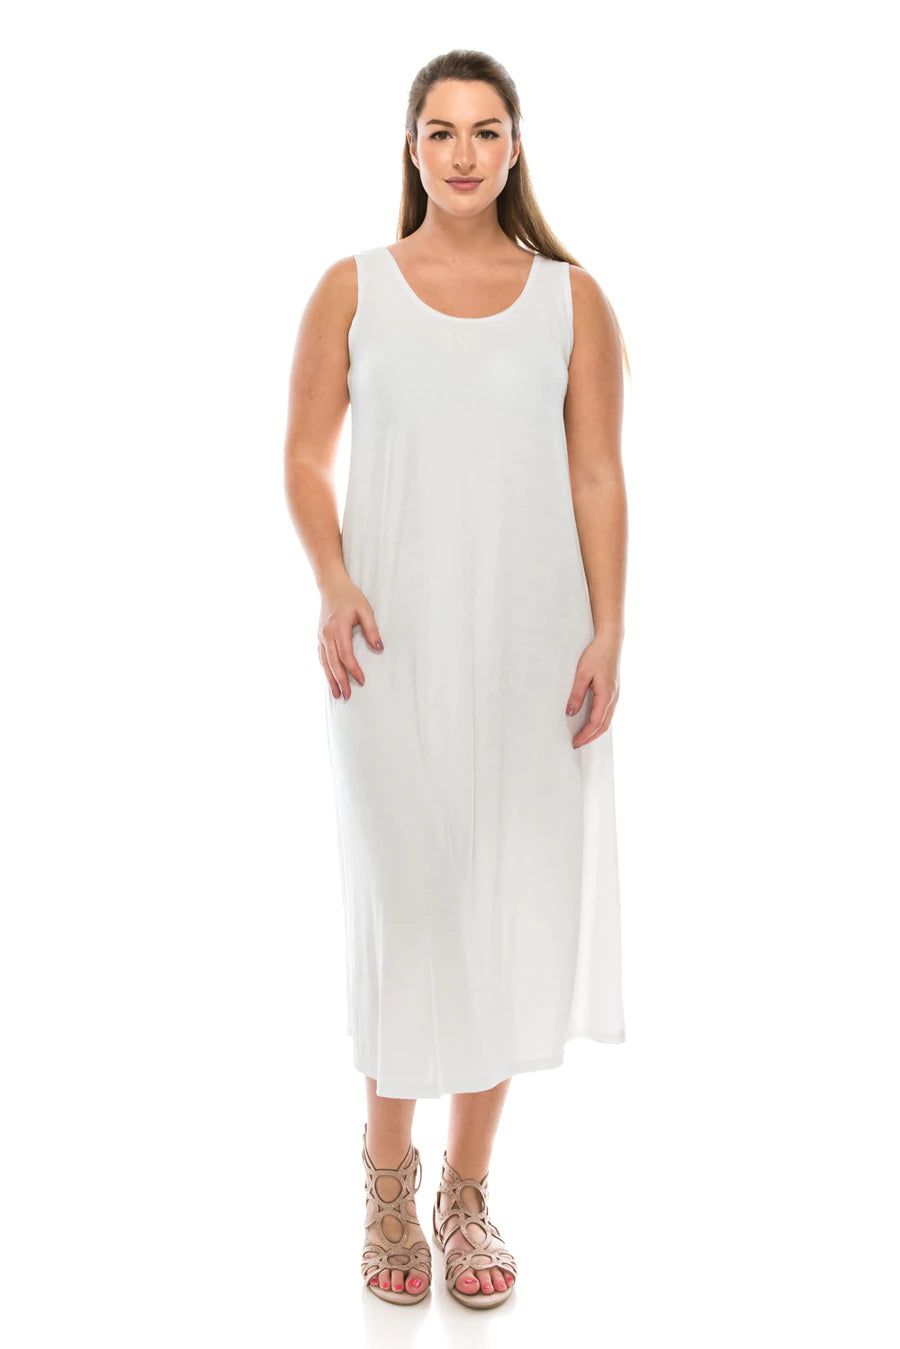 019- Jostar Slinky Sleeveless Long Dress- White